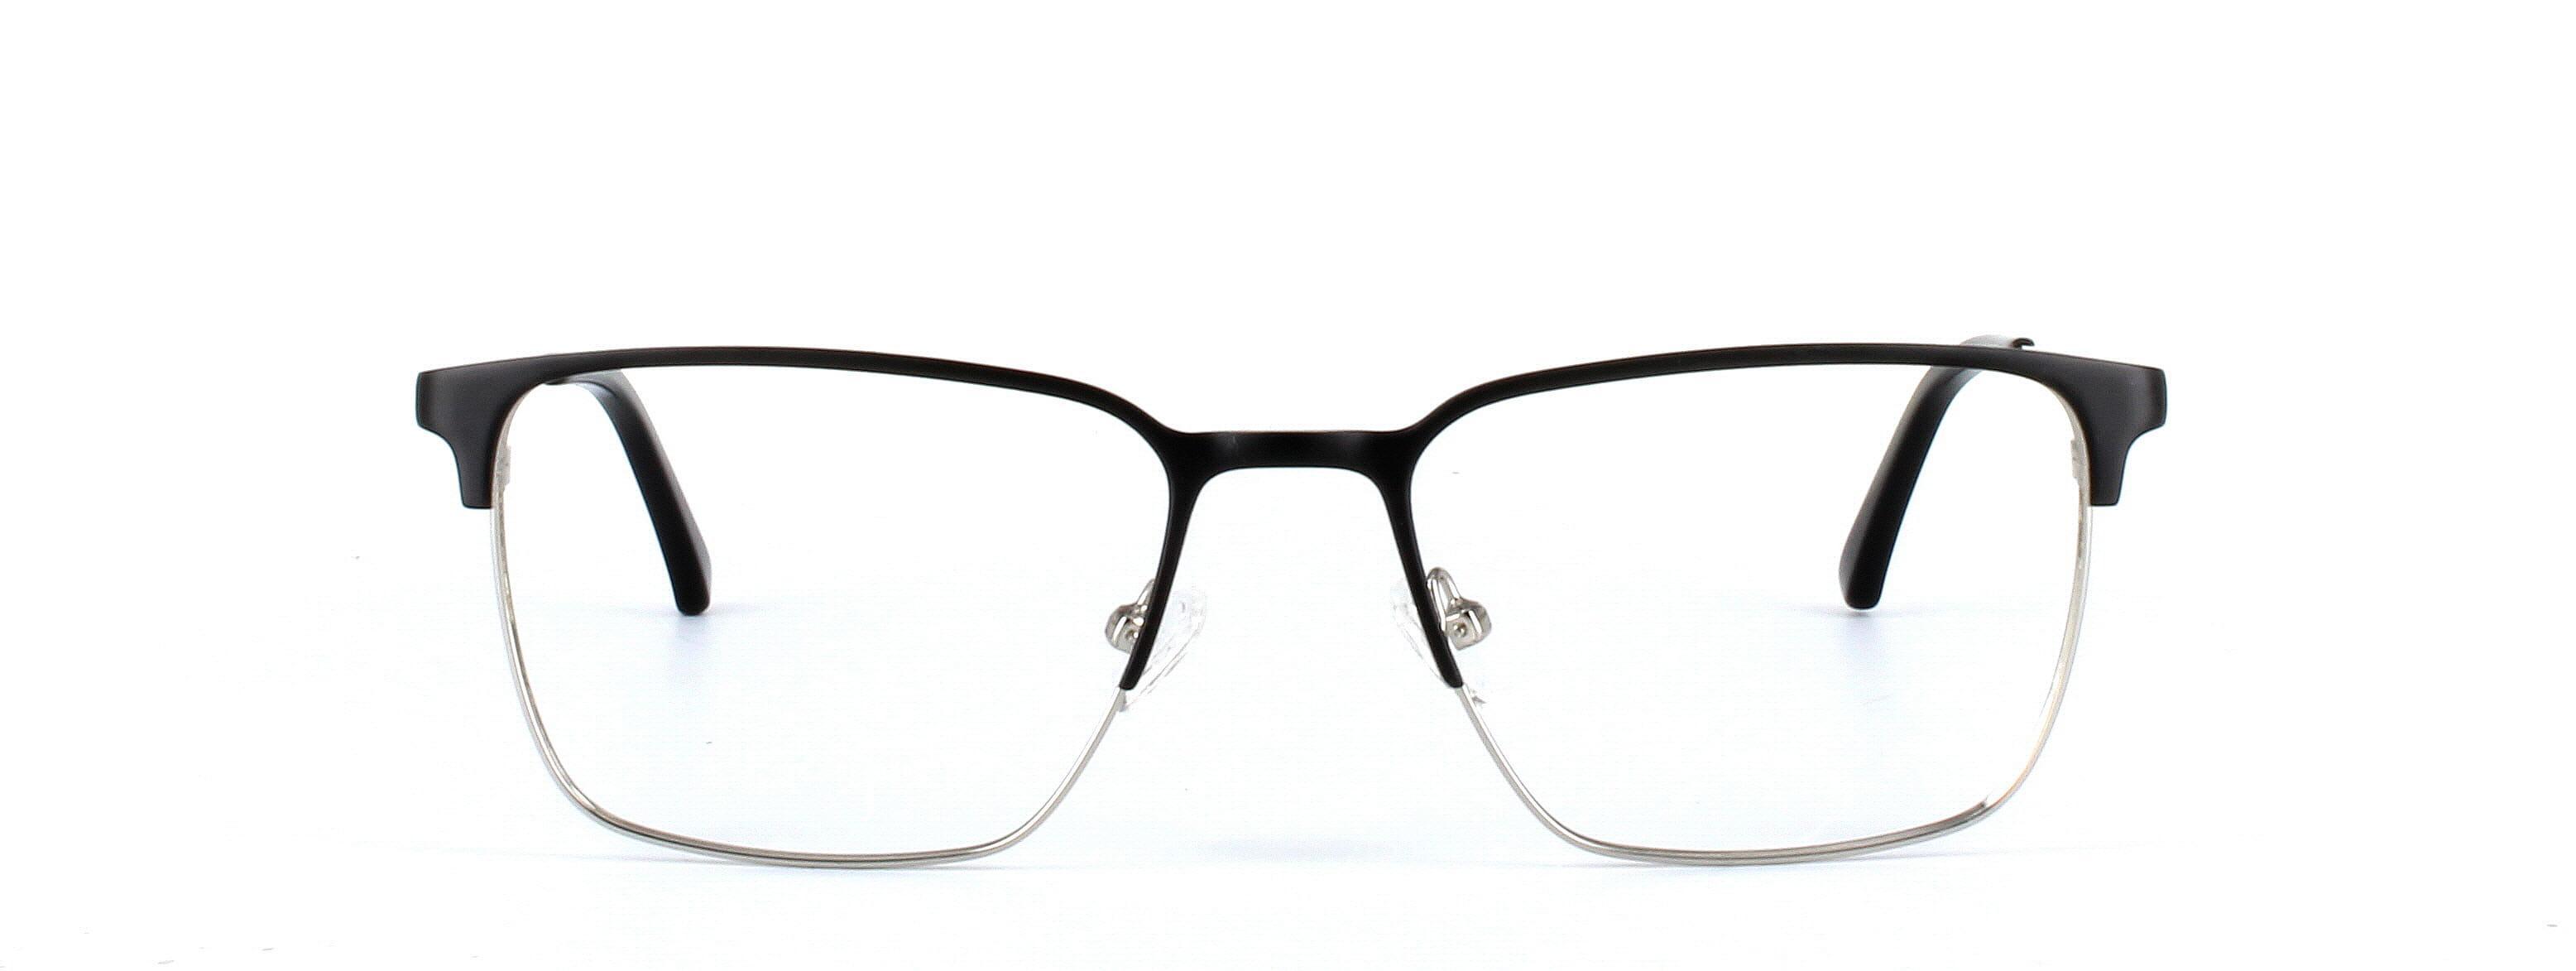 Larkin Matt Black Full Rim Metal Glasses - Image View 5